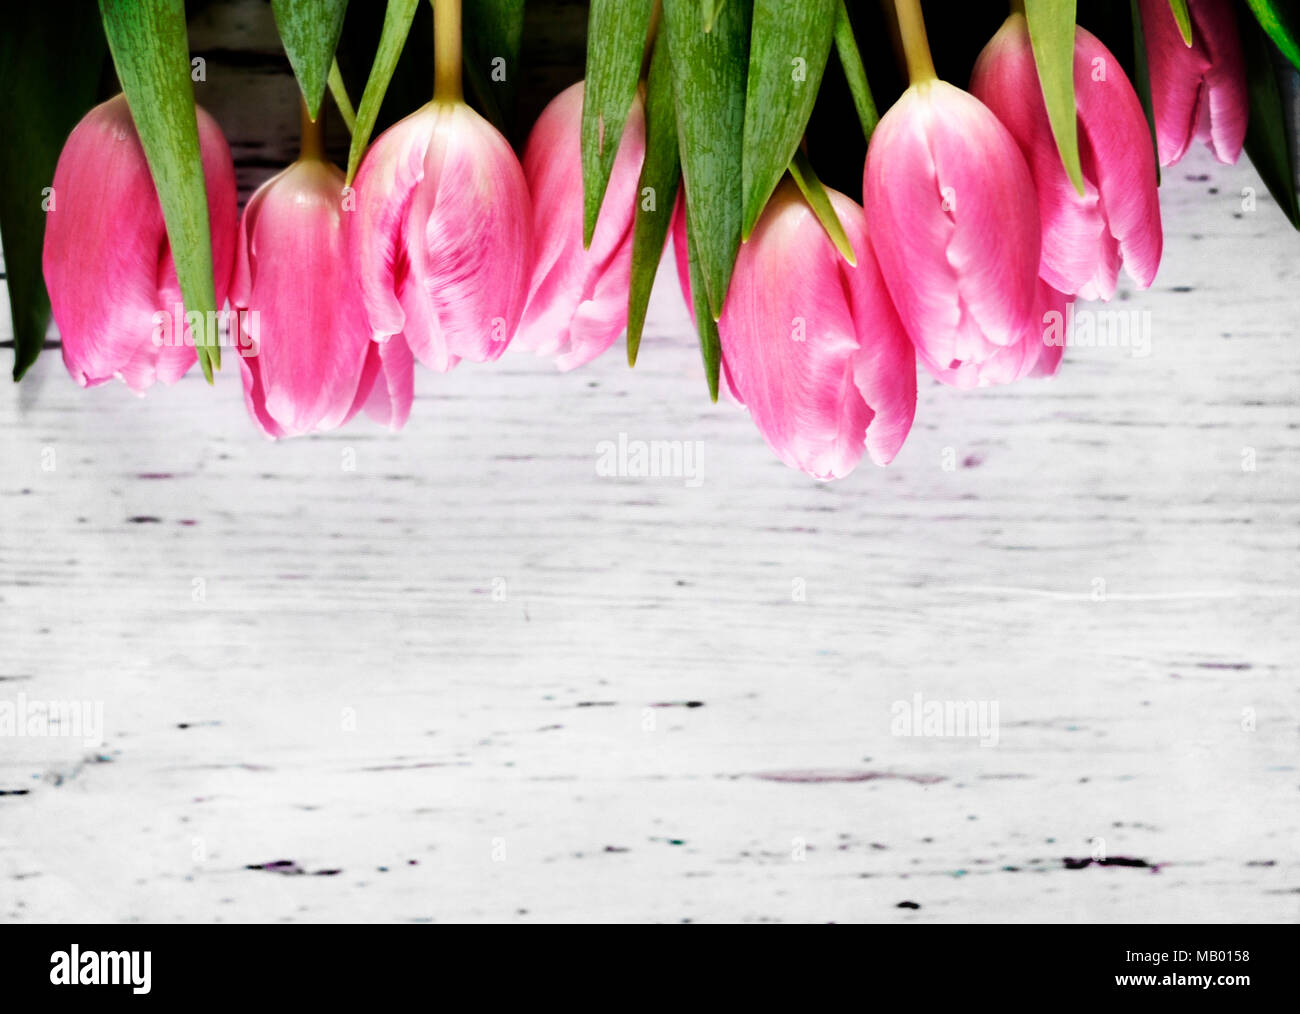 Rosa Tulpen oder Tulip Blumenstrauß auf einem Holztisch. Frühling Hintergrund mit frischen Blumenstrauß und Kopieren. Dekorative Sommer Hintergrund. Stockfoto